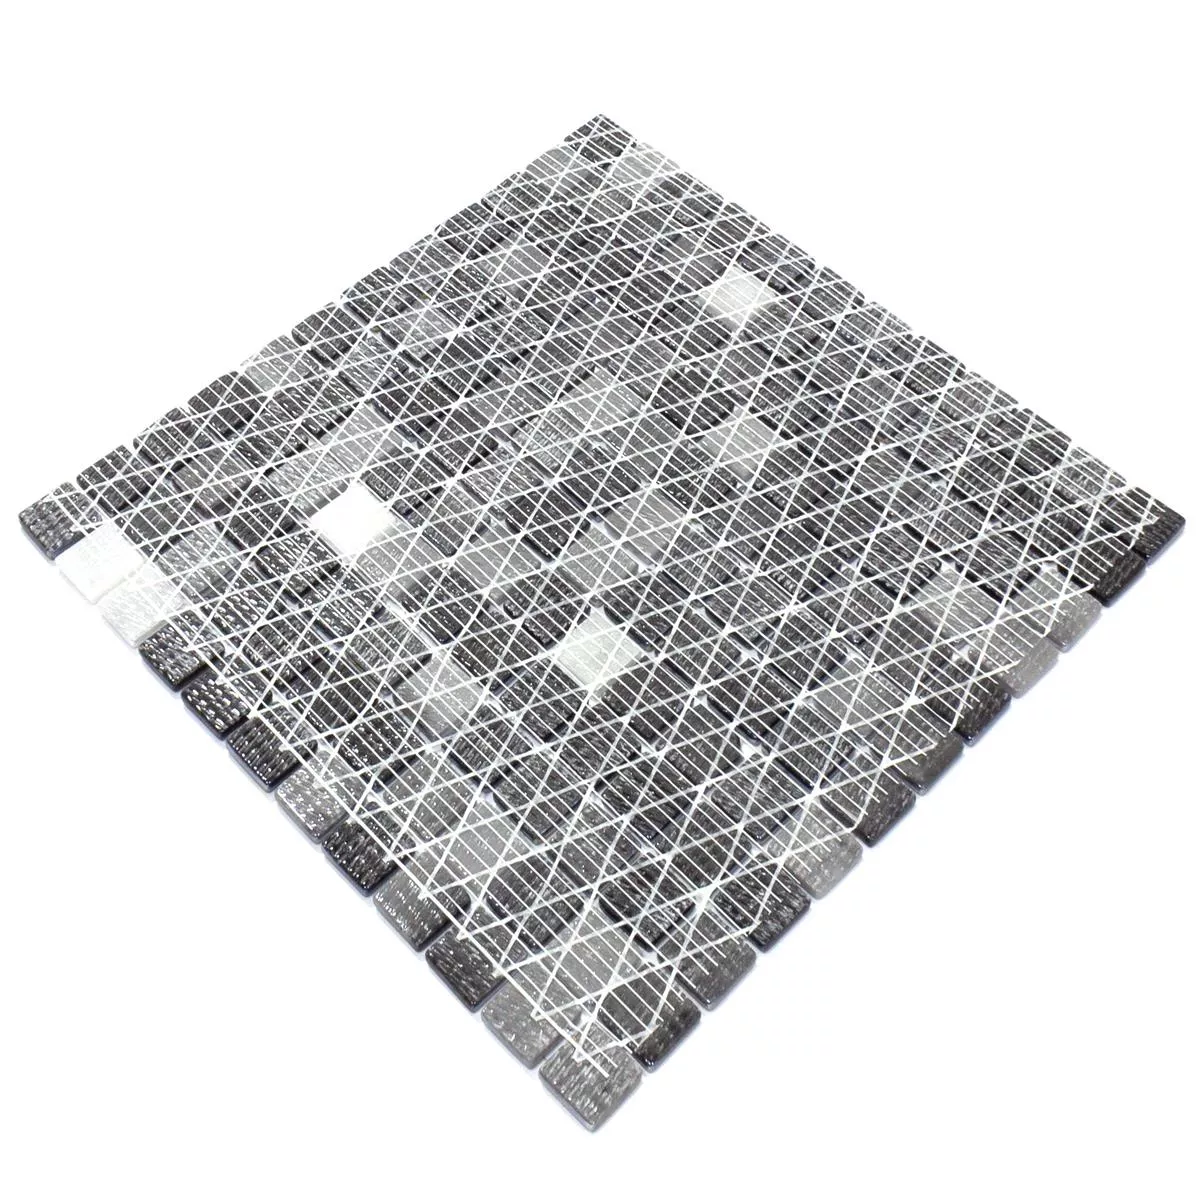 Vzorek Skleněná Mozaika Dlaždice Silvertown Antracitová Metallic 25x25mm